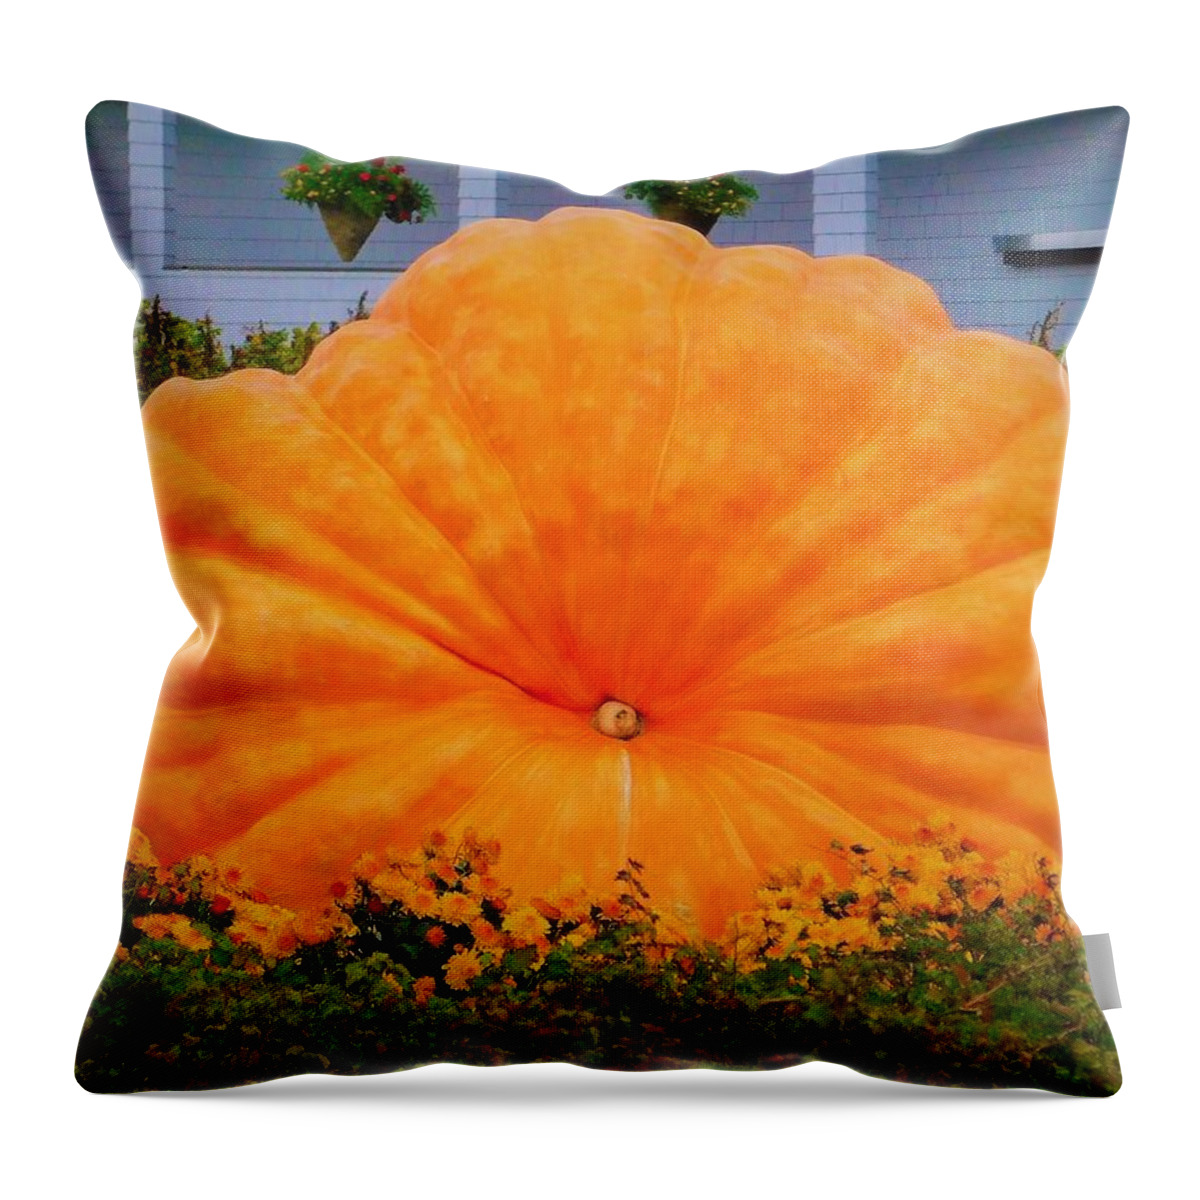  Giant Pumpkin Throw Pillow